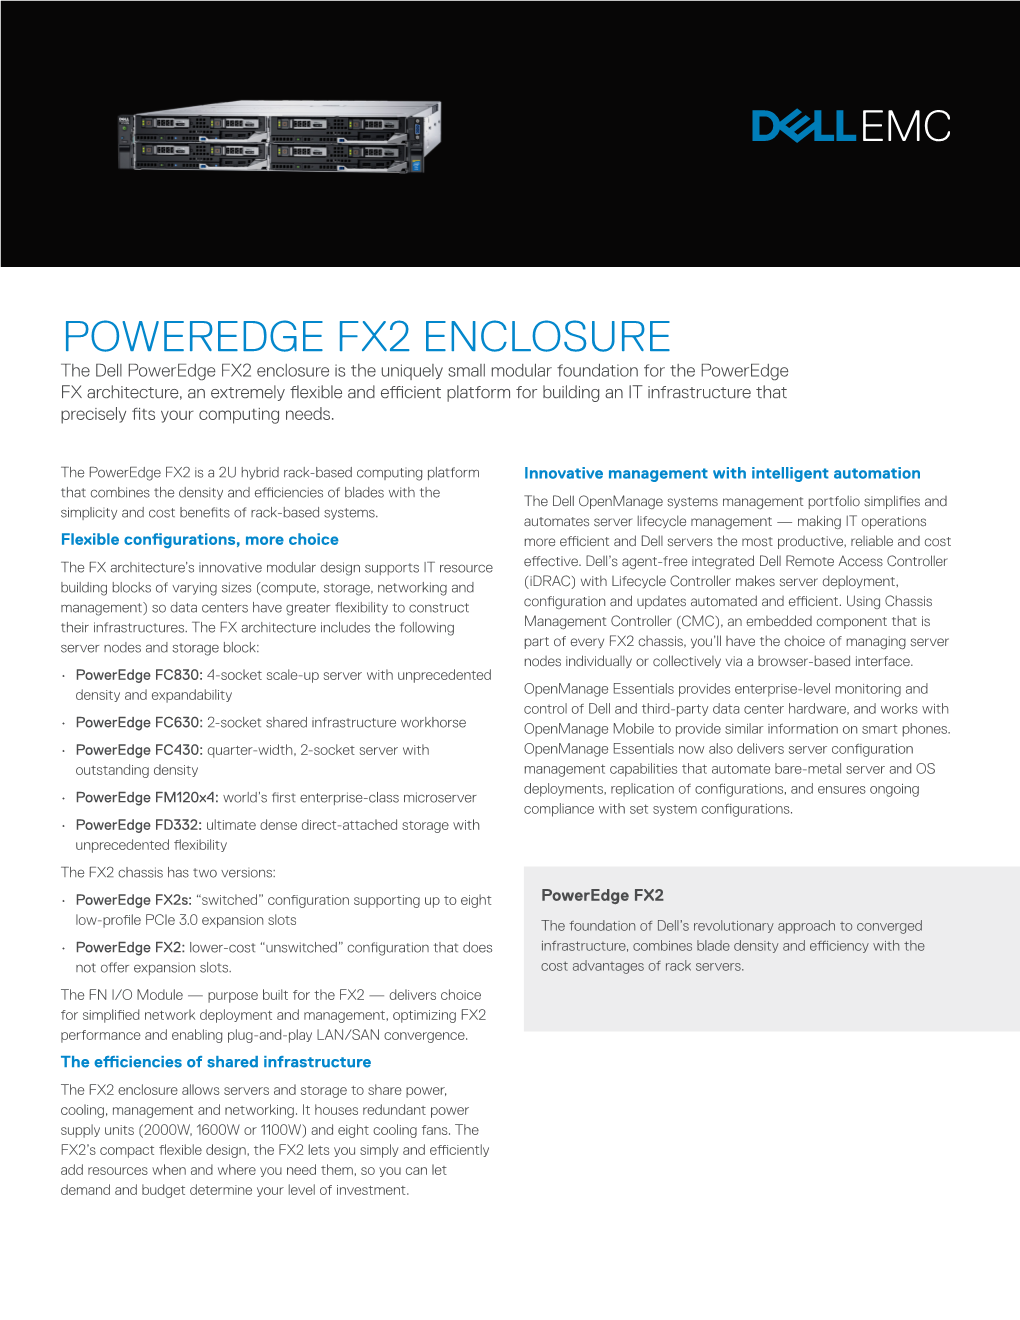 Poweredge Fx2 Enclosure